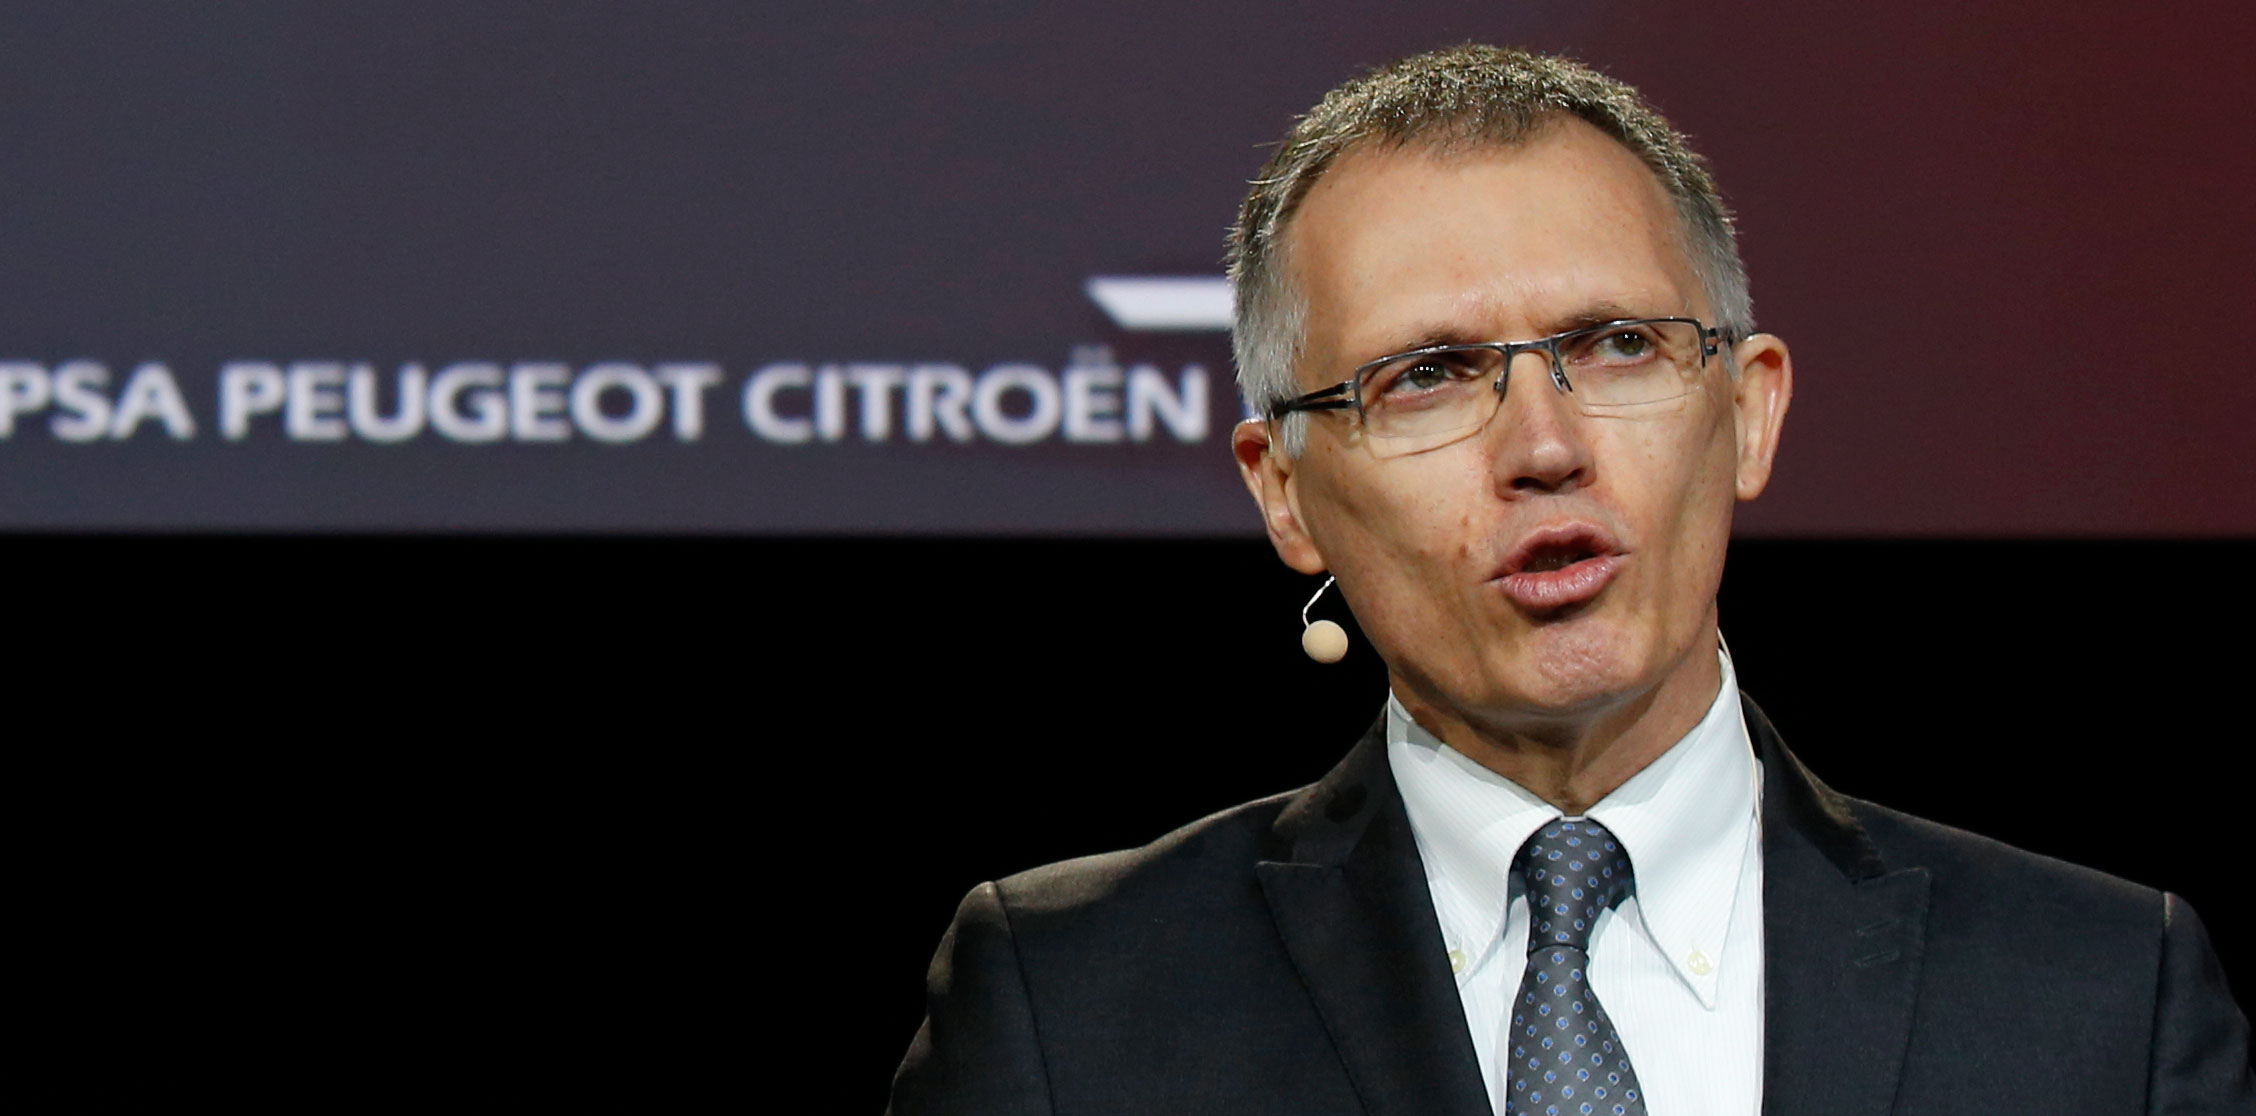 Pourquoi les voitures électriques ne se démocratisent pas, selon le PDG de Peugeot